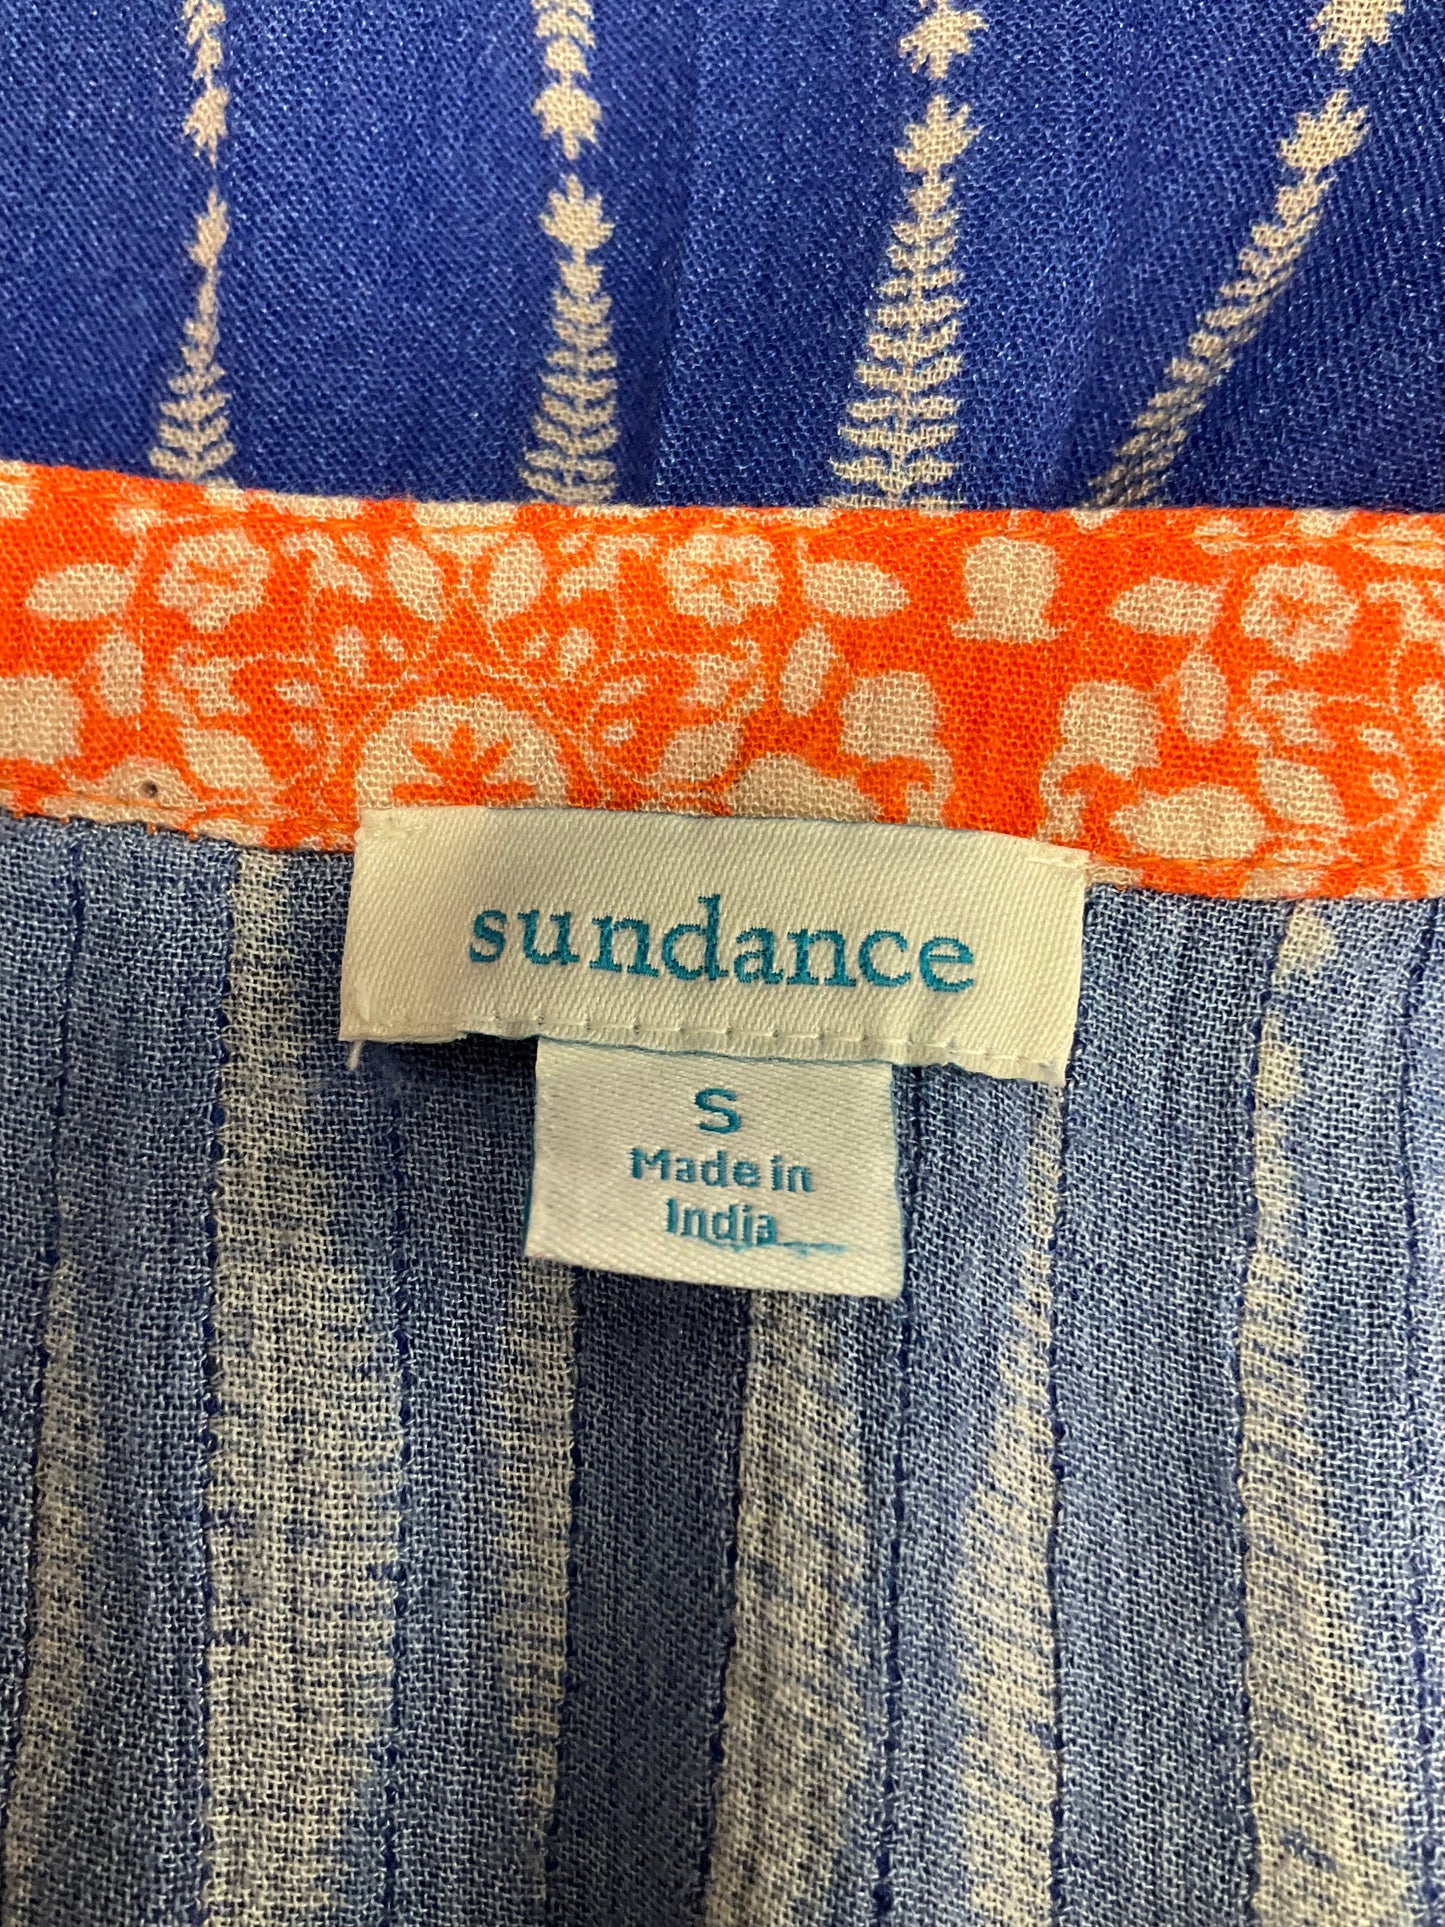 Blue & Orange Top Short Sleeve Sundance, Size S